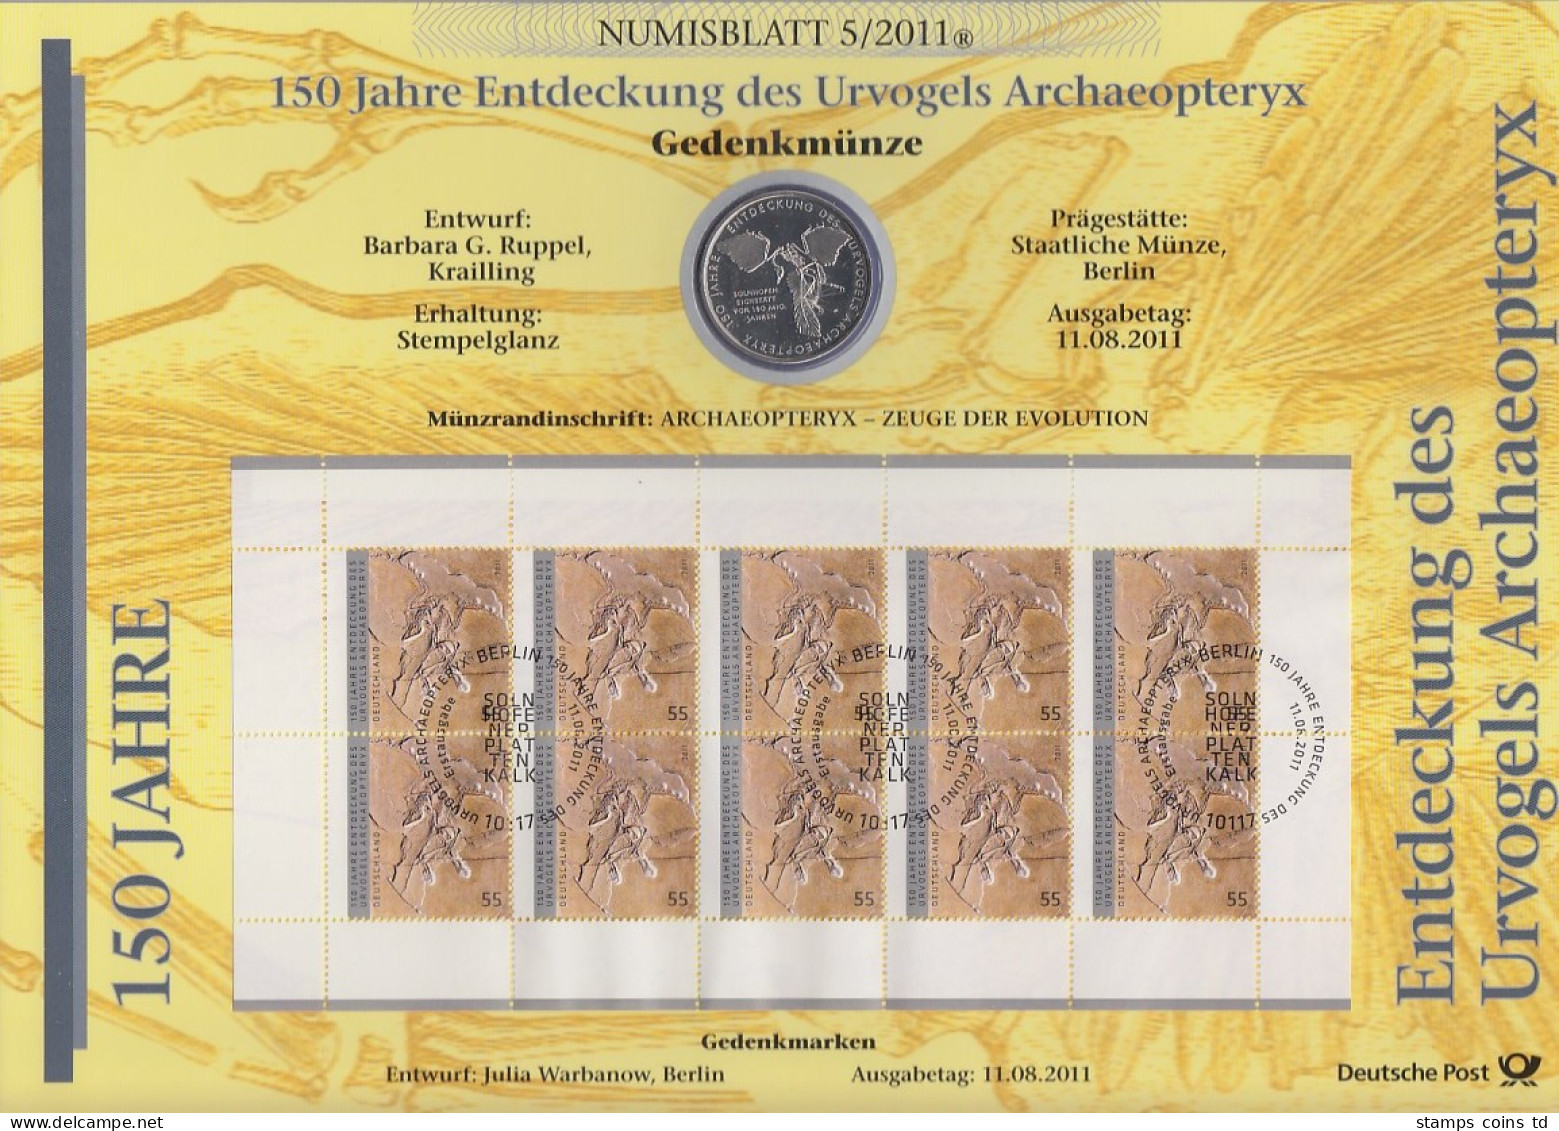 Bundesrepublik Numisblatt 5/2011 Archaeopteryx Mit 10-Euro-Gedenkmünze - Sammlungen